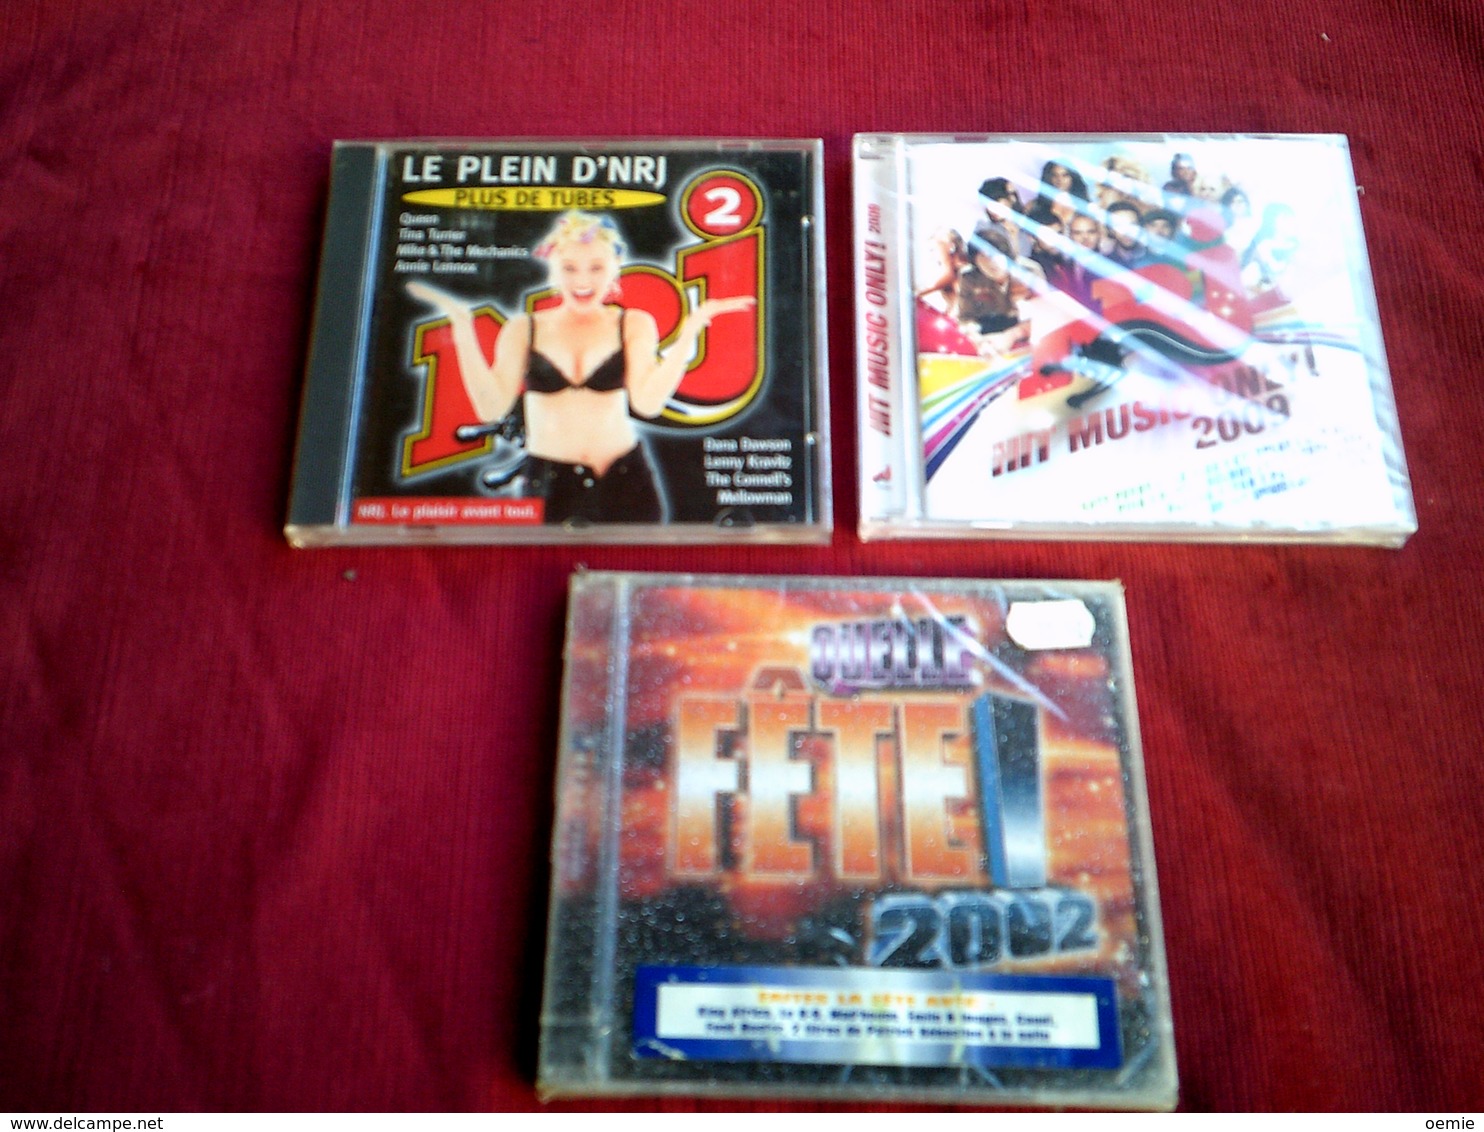 COLLECTION DE 3 CD ALBUM  DE COMPILATION  ° NRJ   ° HIT MUSIC ONLY 2009  DOUBLE CD 33 TITRES+ NRJ 2 + FETE 2002 - Complete Collections